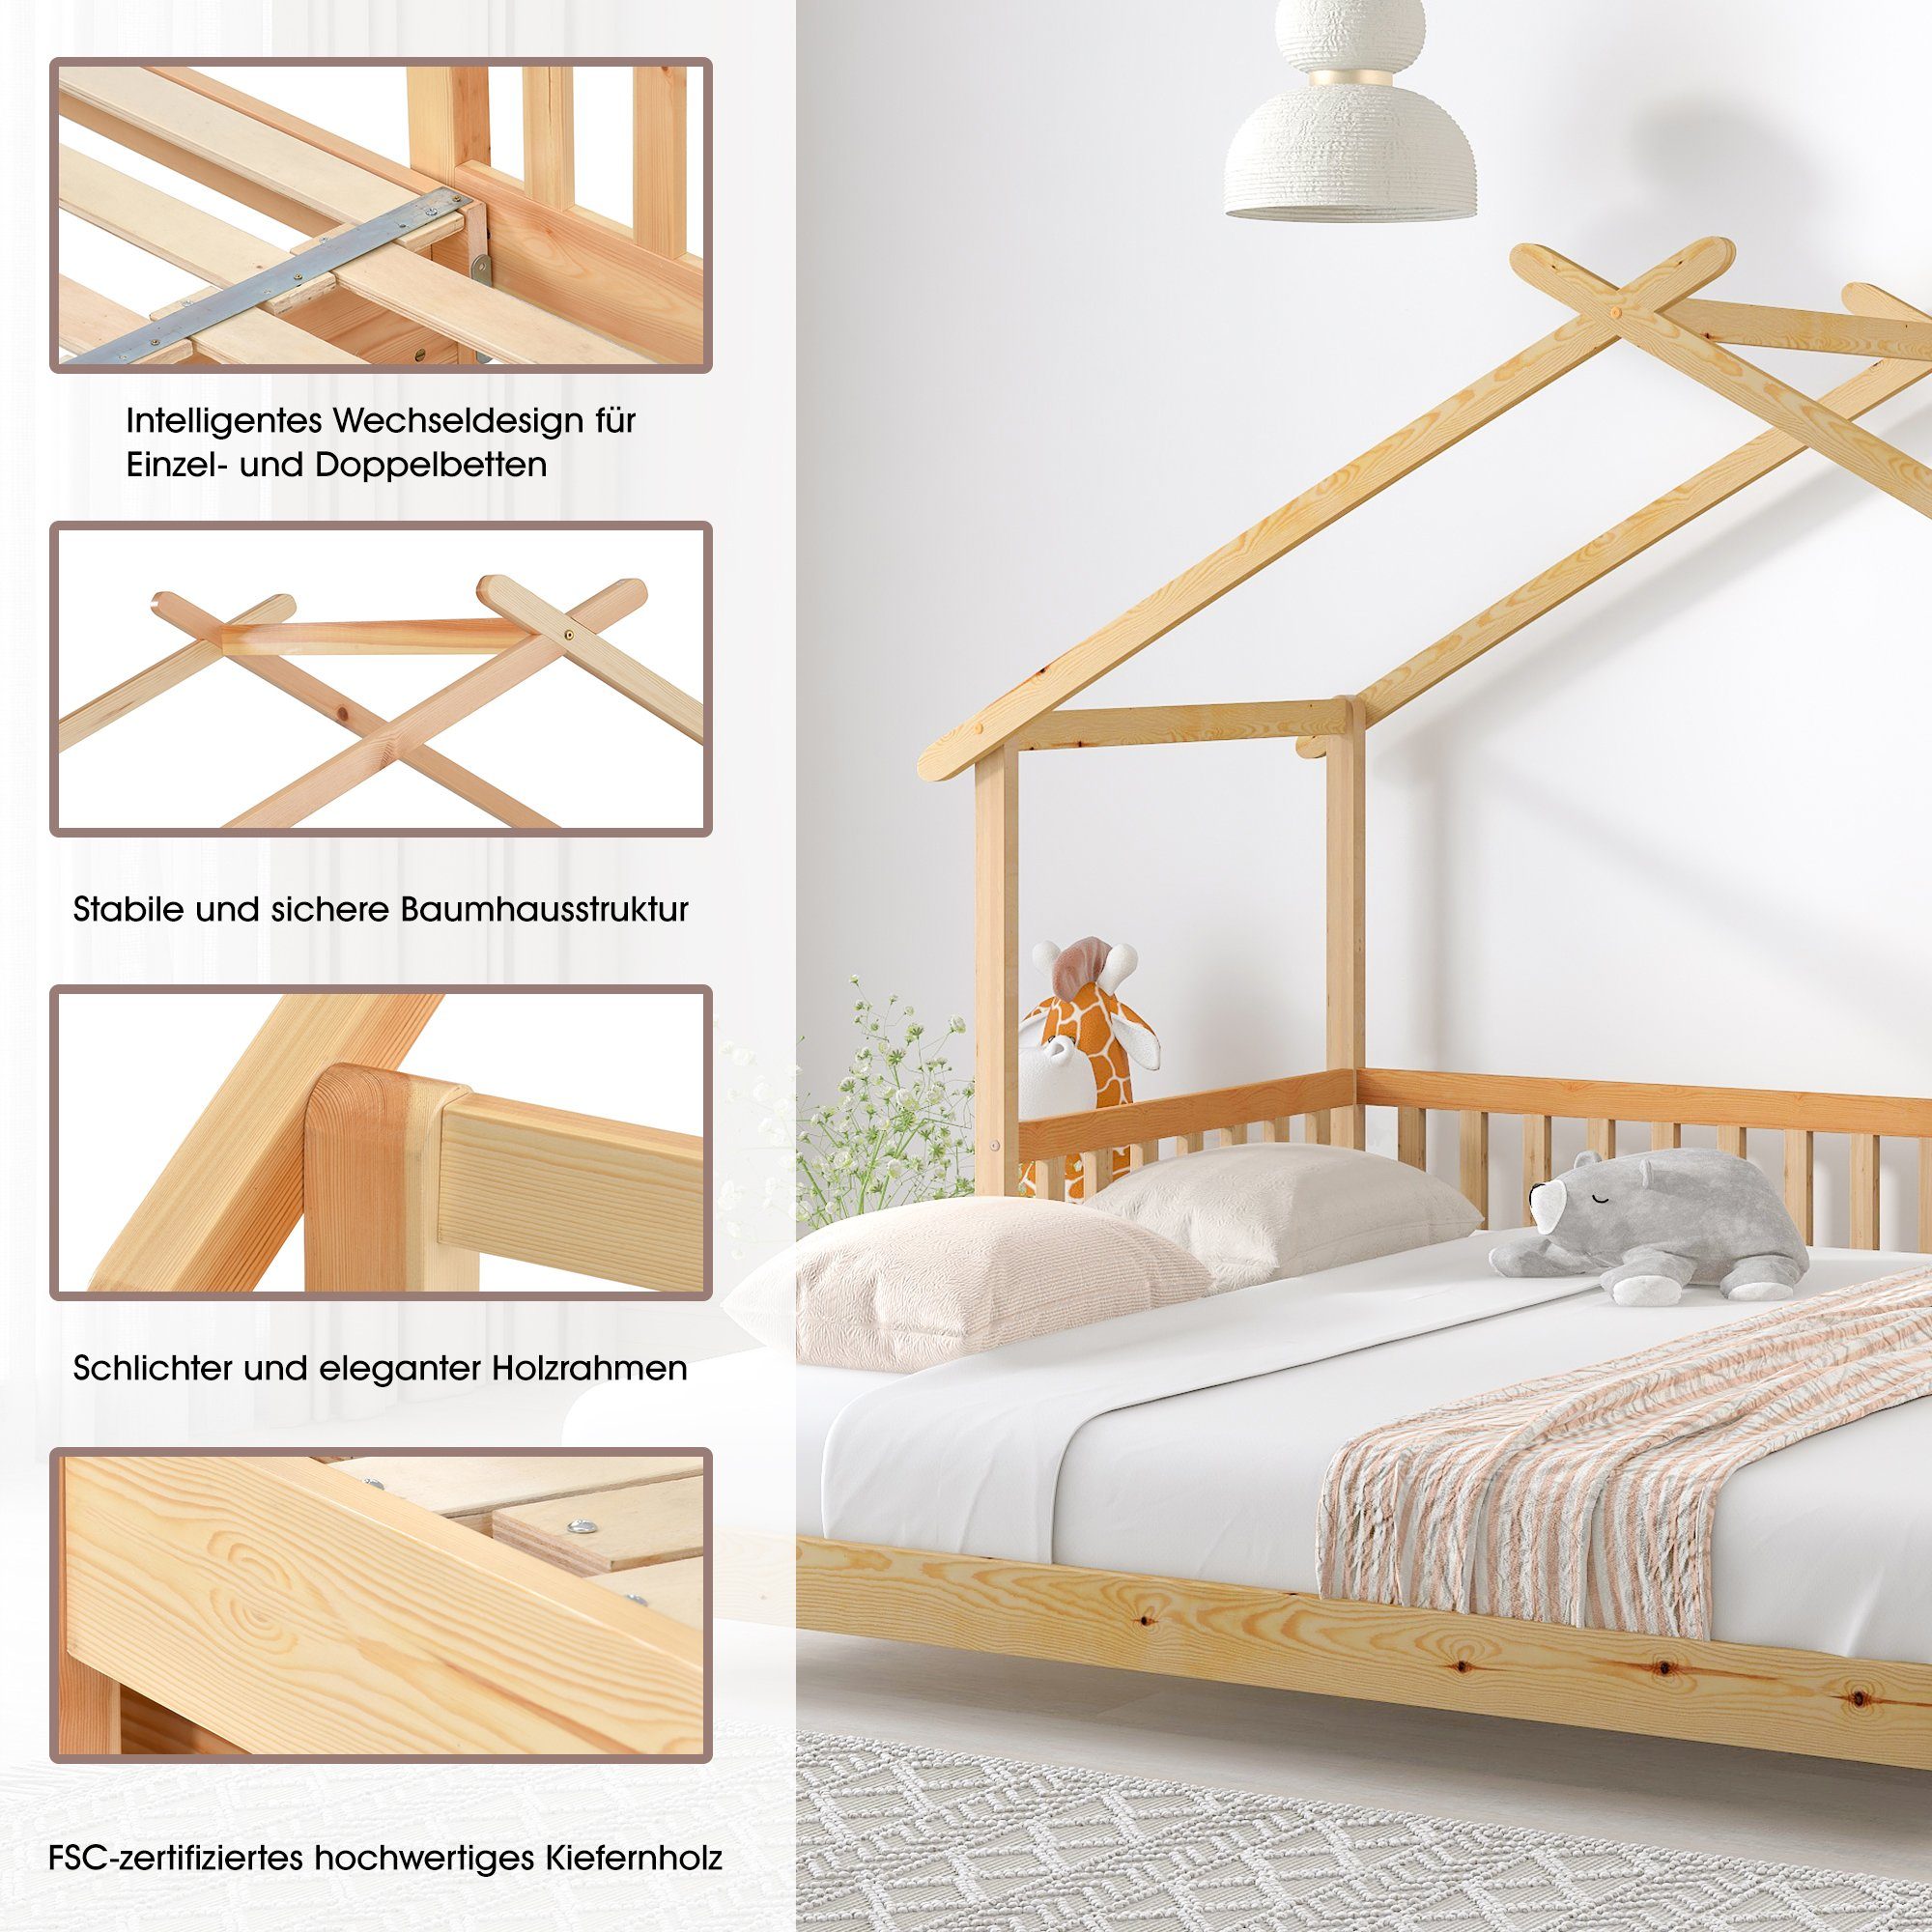 HAUSS SPLOE Bett Hausbett Kinderbett Matratze Ohne Baumhausbett keine enthält Matratze), Holzbett Bett Bettrahmen Erweiterbares (Das